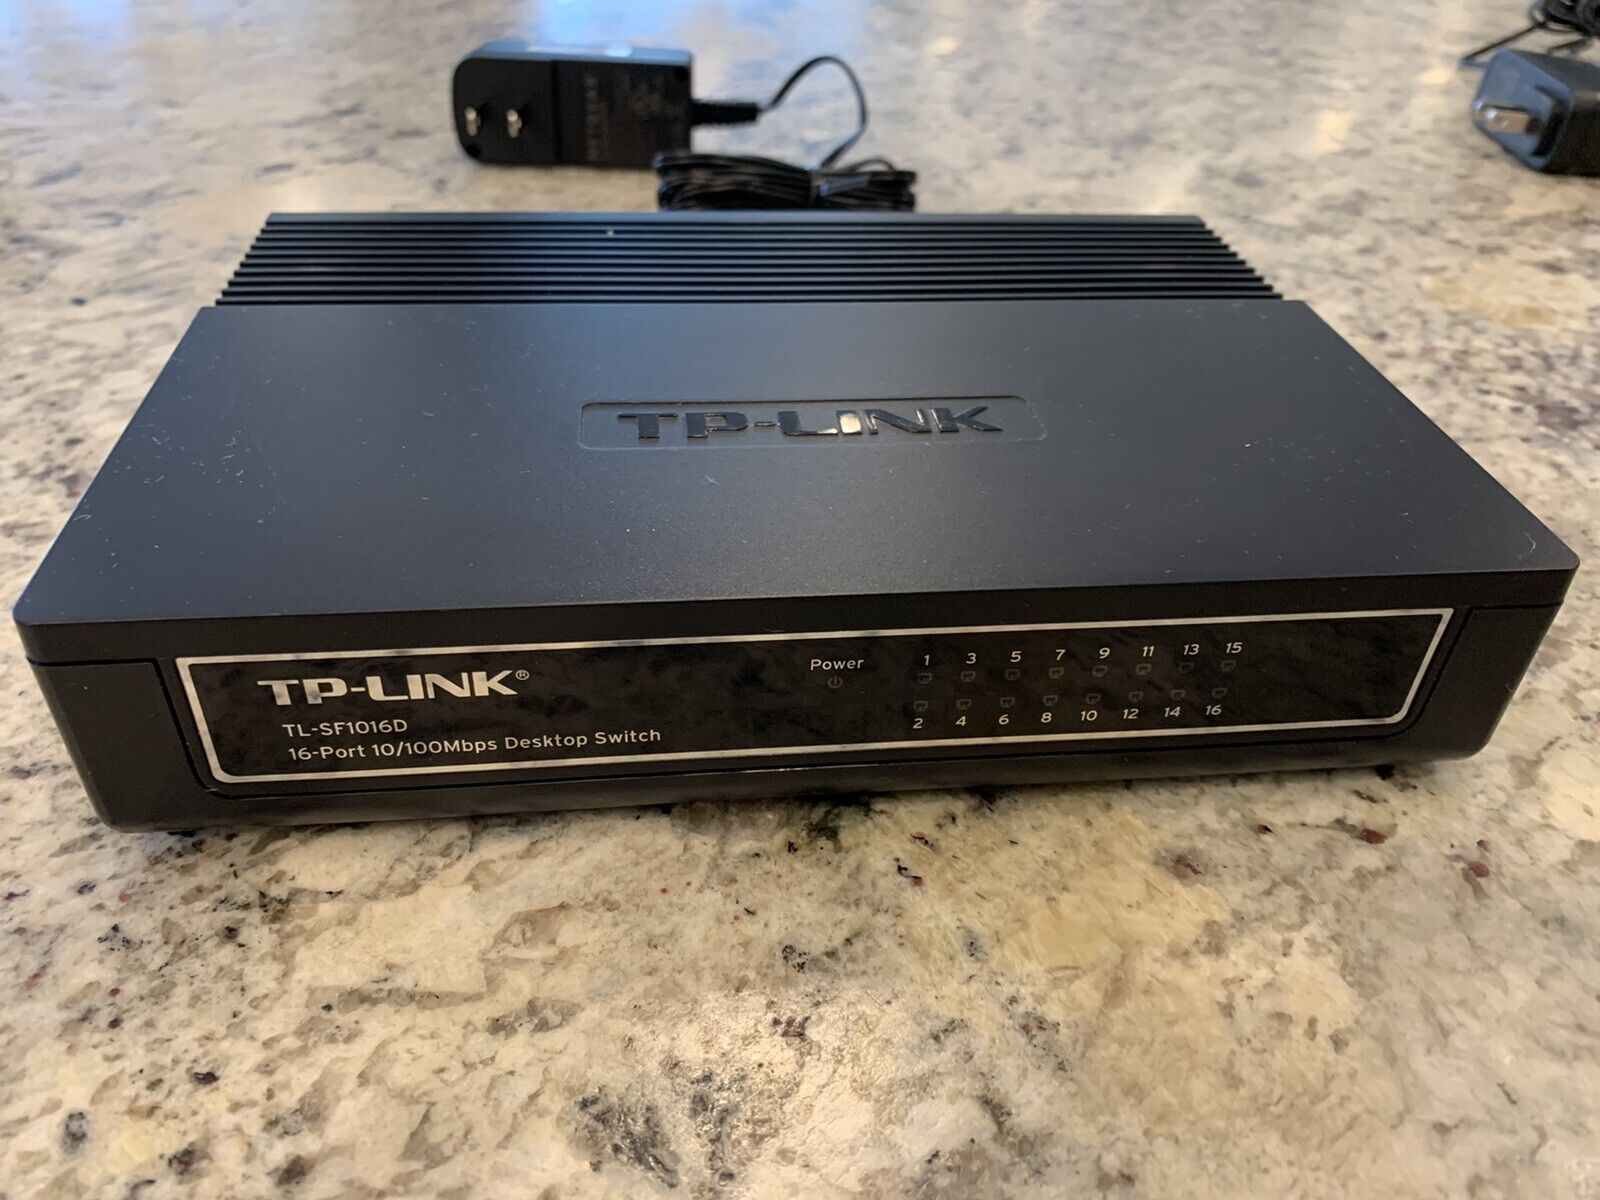  TP-LINK TL-SF1016D 16-Port Fast Ethernet 10/100Mbps Desktop Network Switch 